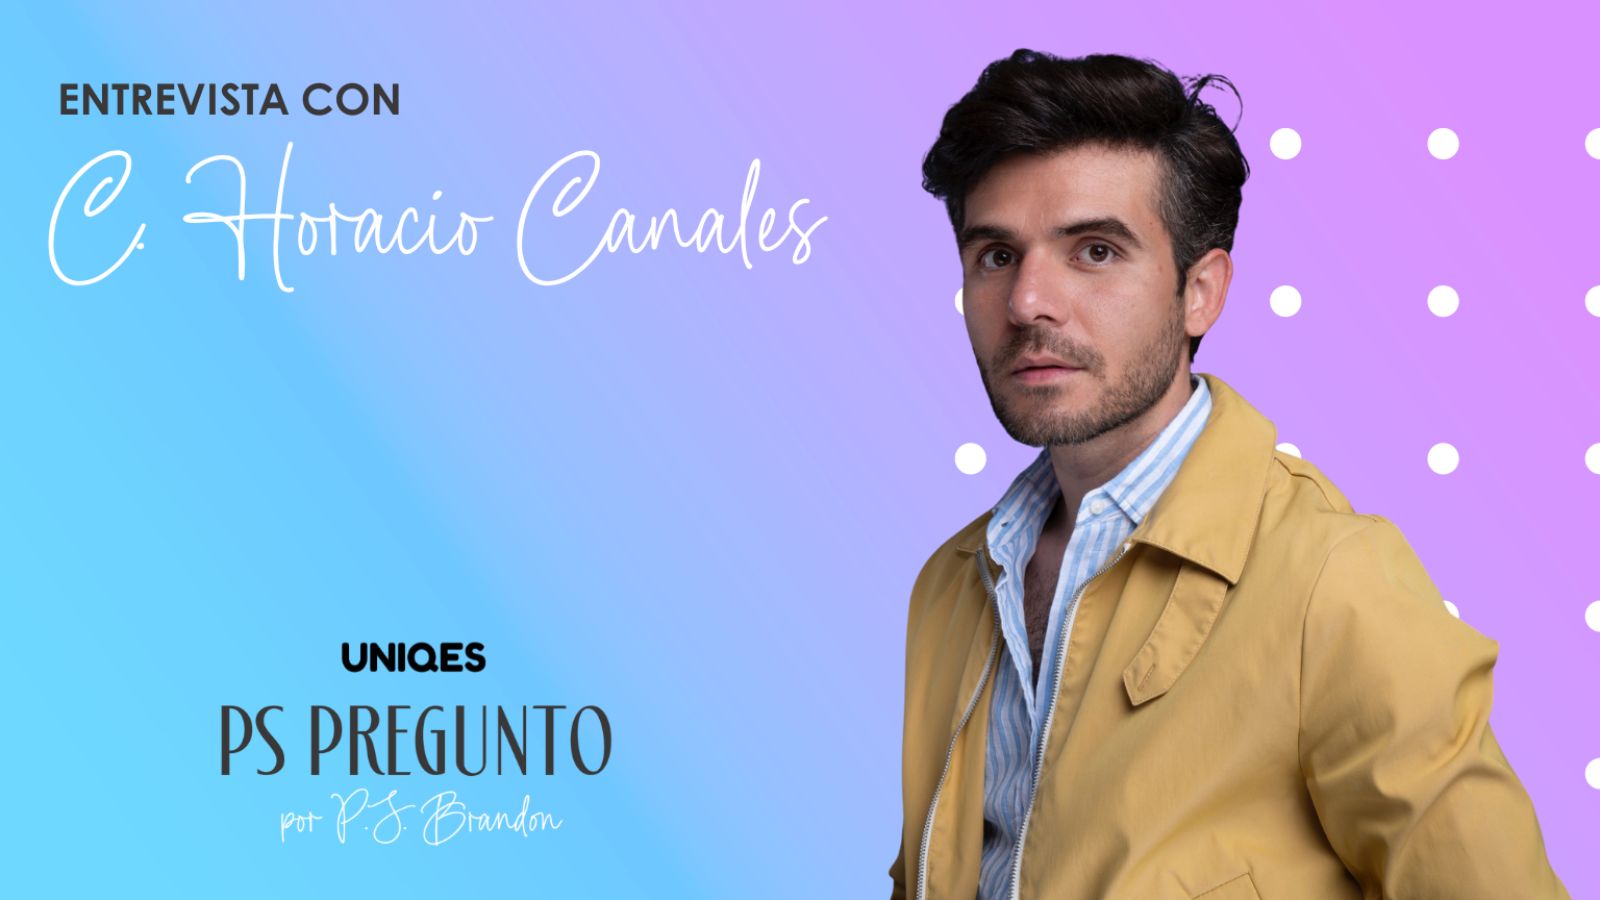 PS PREGUNTO: entrevista con Horacio Canales